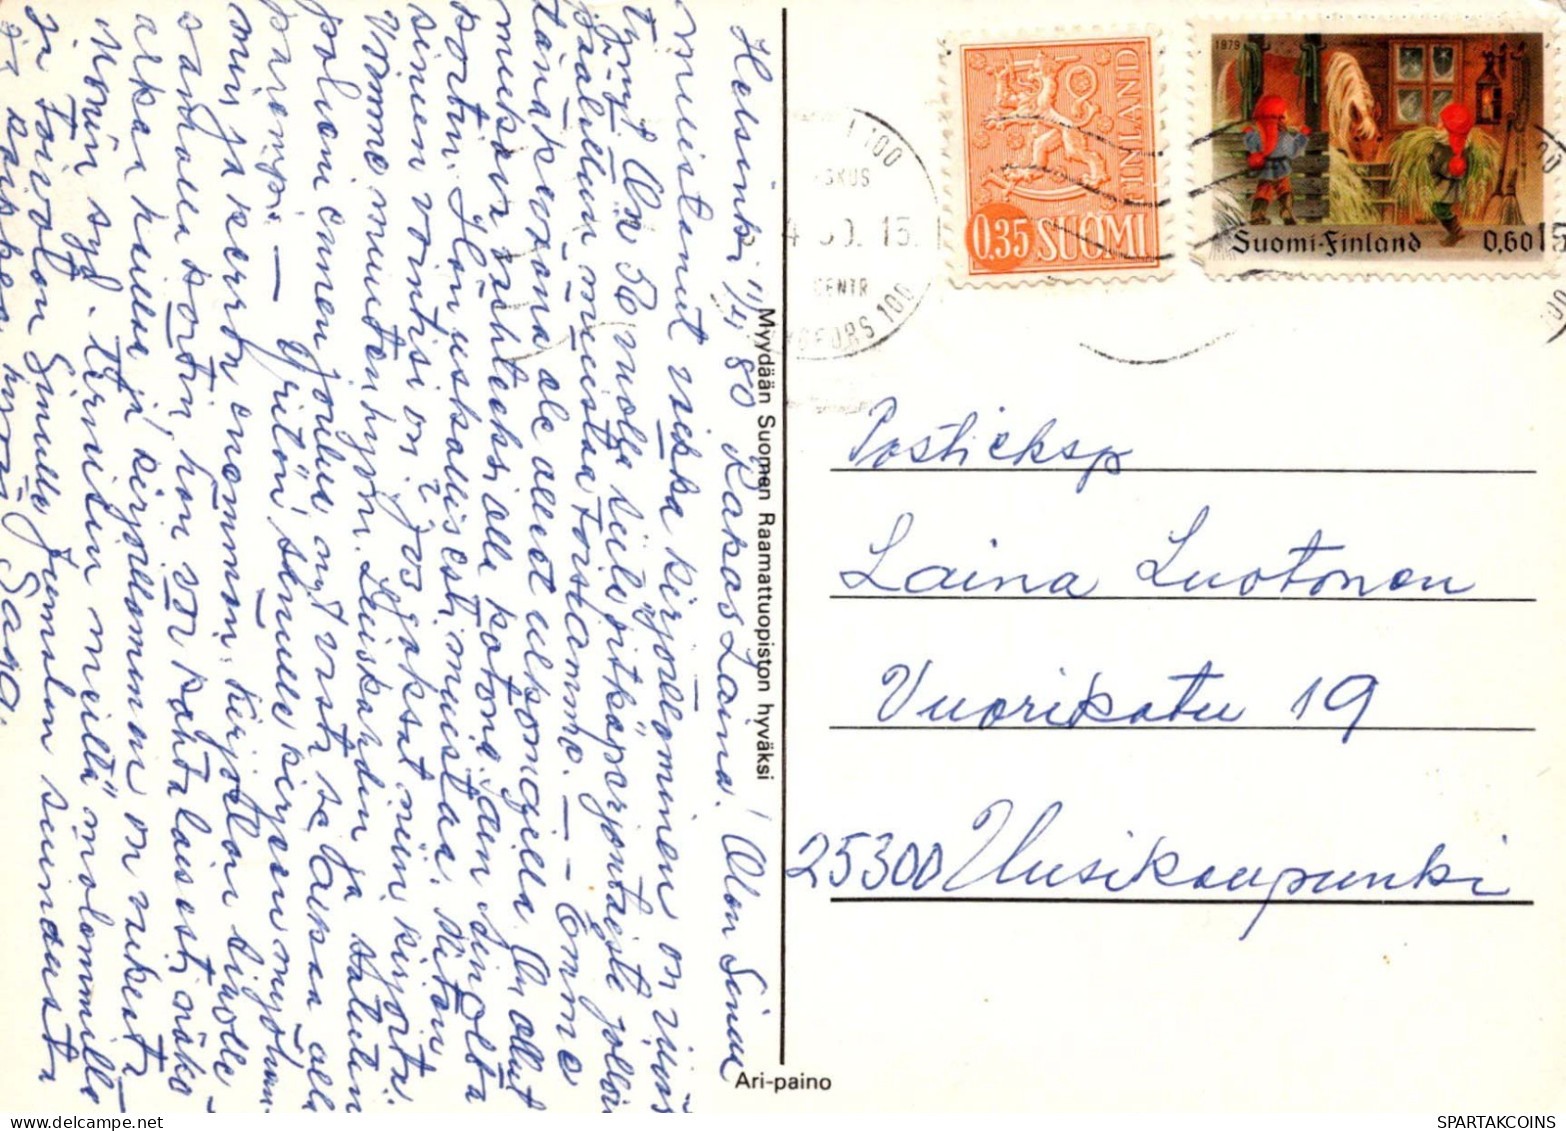 FLEURS Vintage Carte Postale CPSM #PAR227.FR - Fleurs